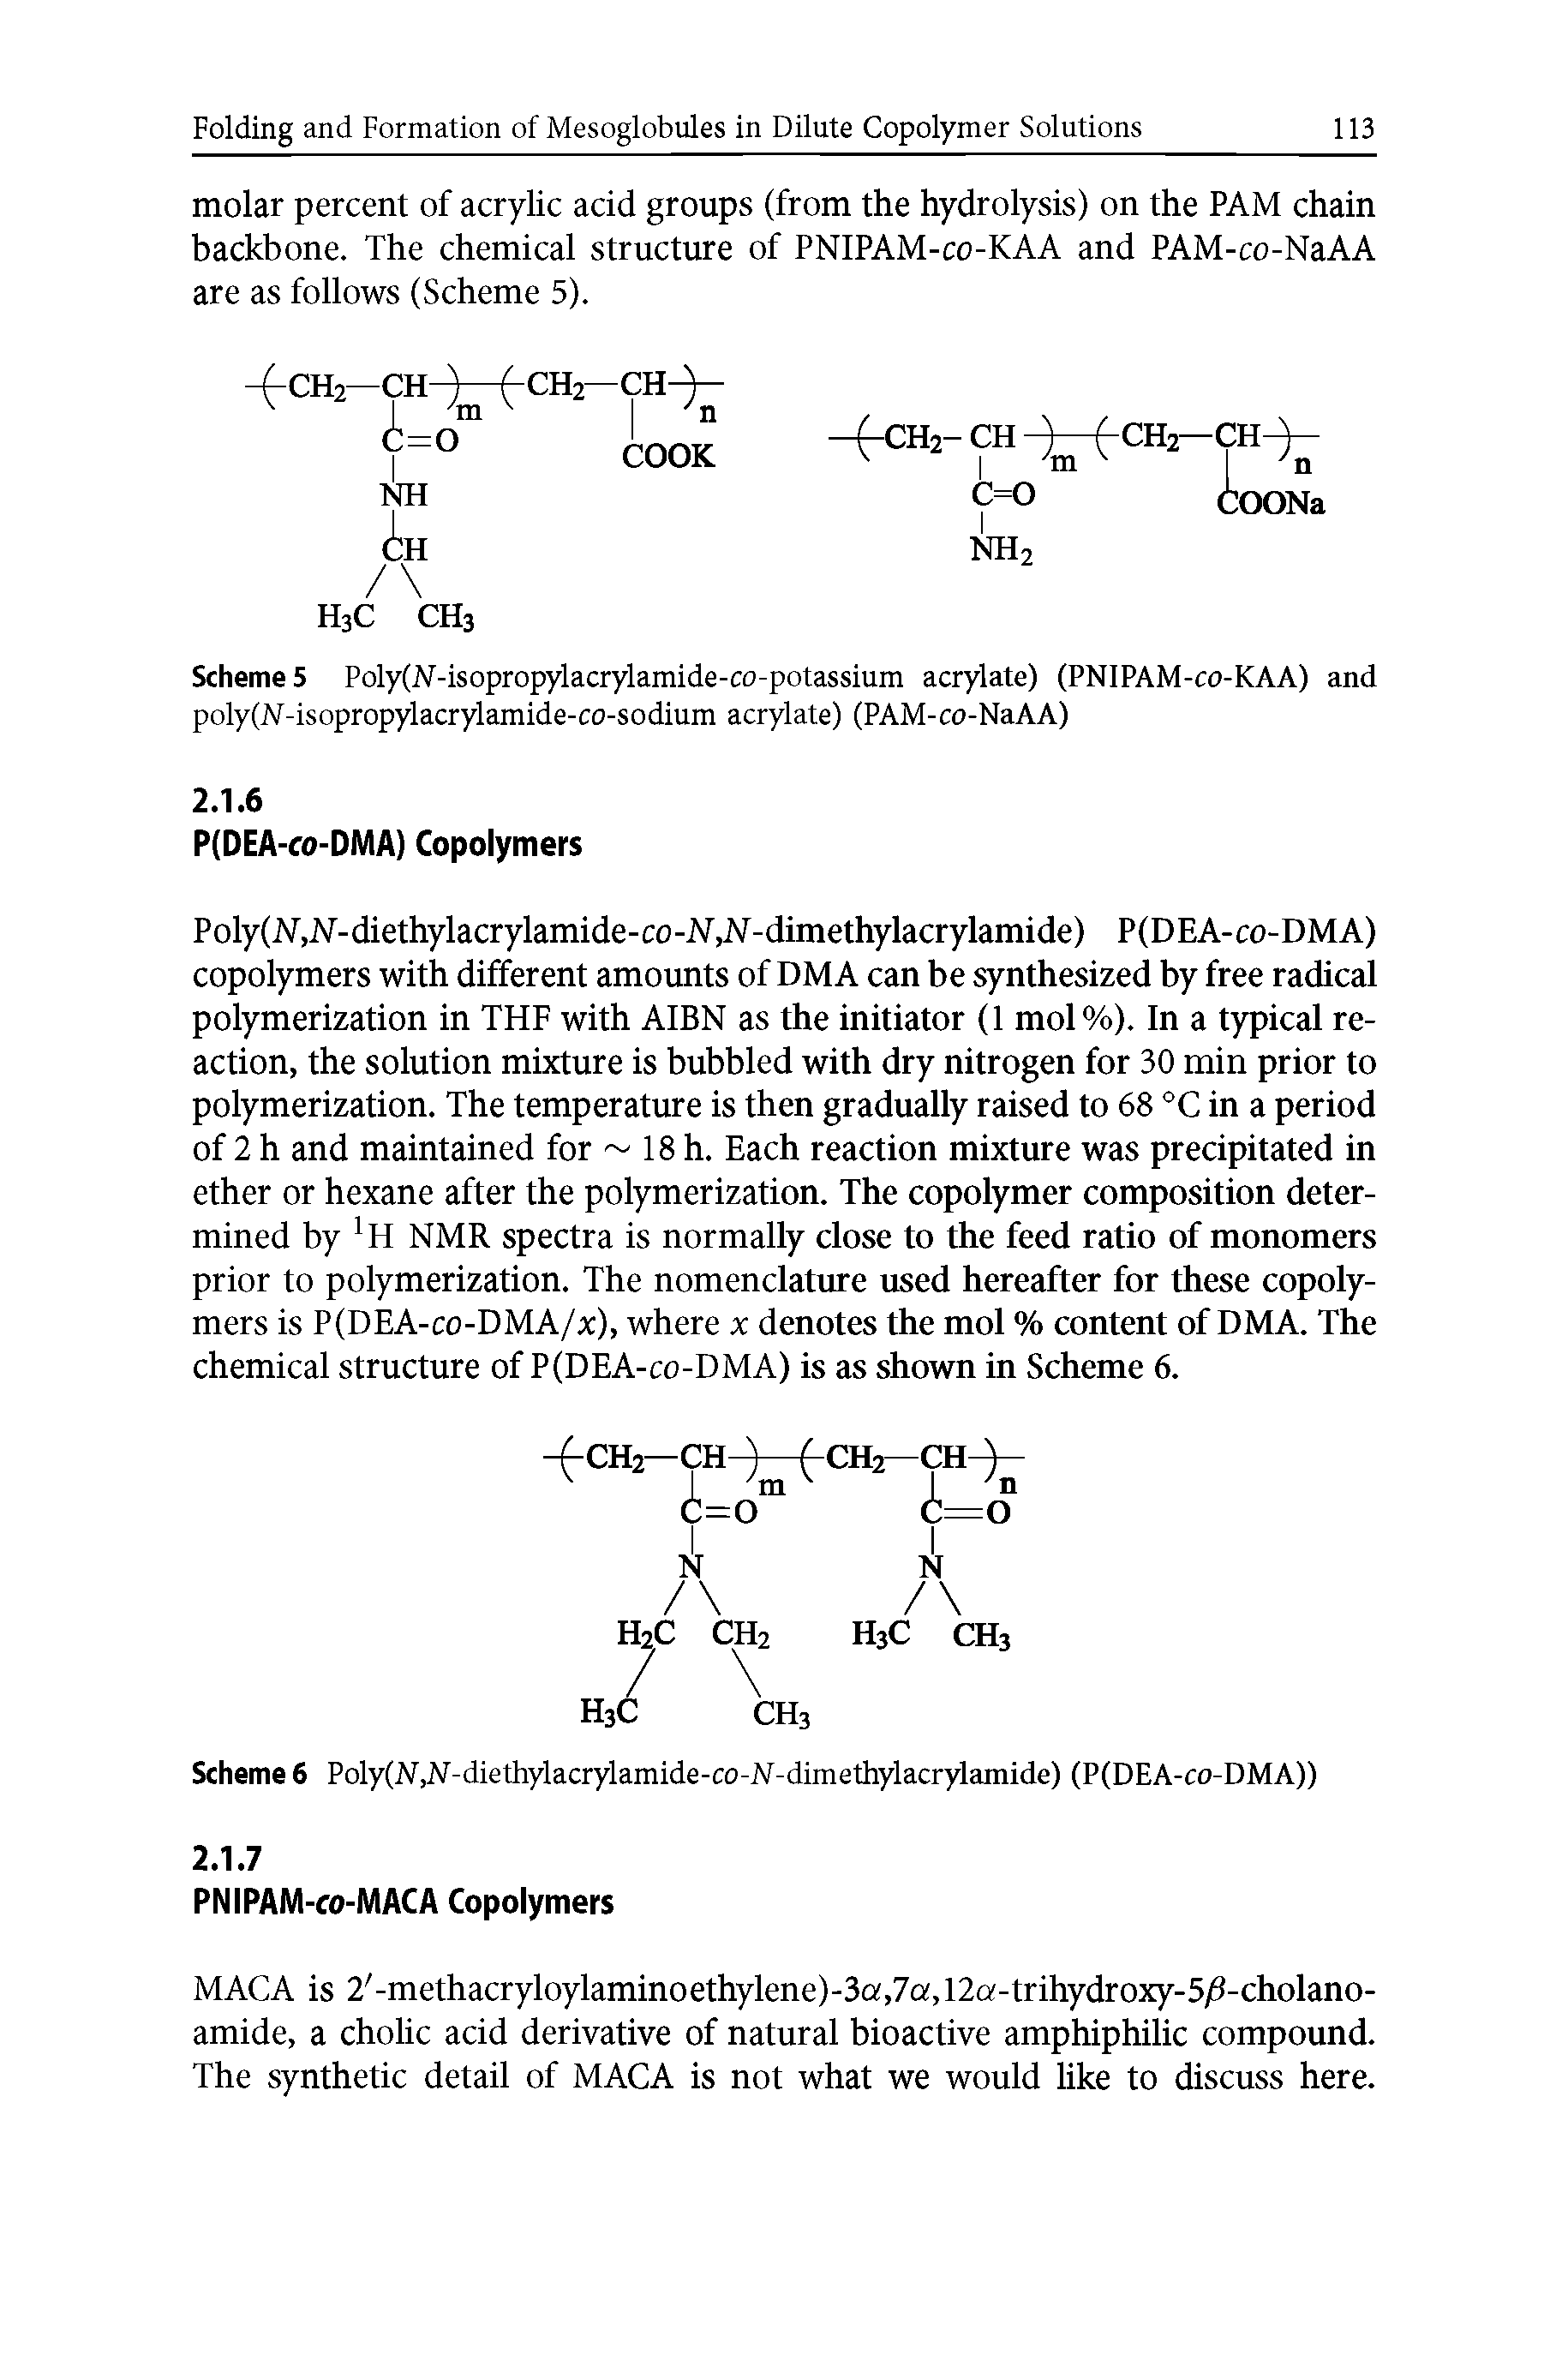 Scheme 5 Poly(N-isopropylacrylamide-co-potassium acrylate) (PNIPAM-co-KAA) and poly(N-isopropylacrylamide-co-sodium acrylate) (PAM-co-NaAA)...